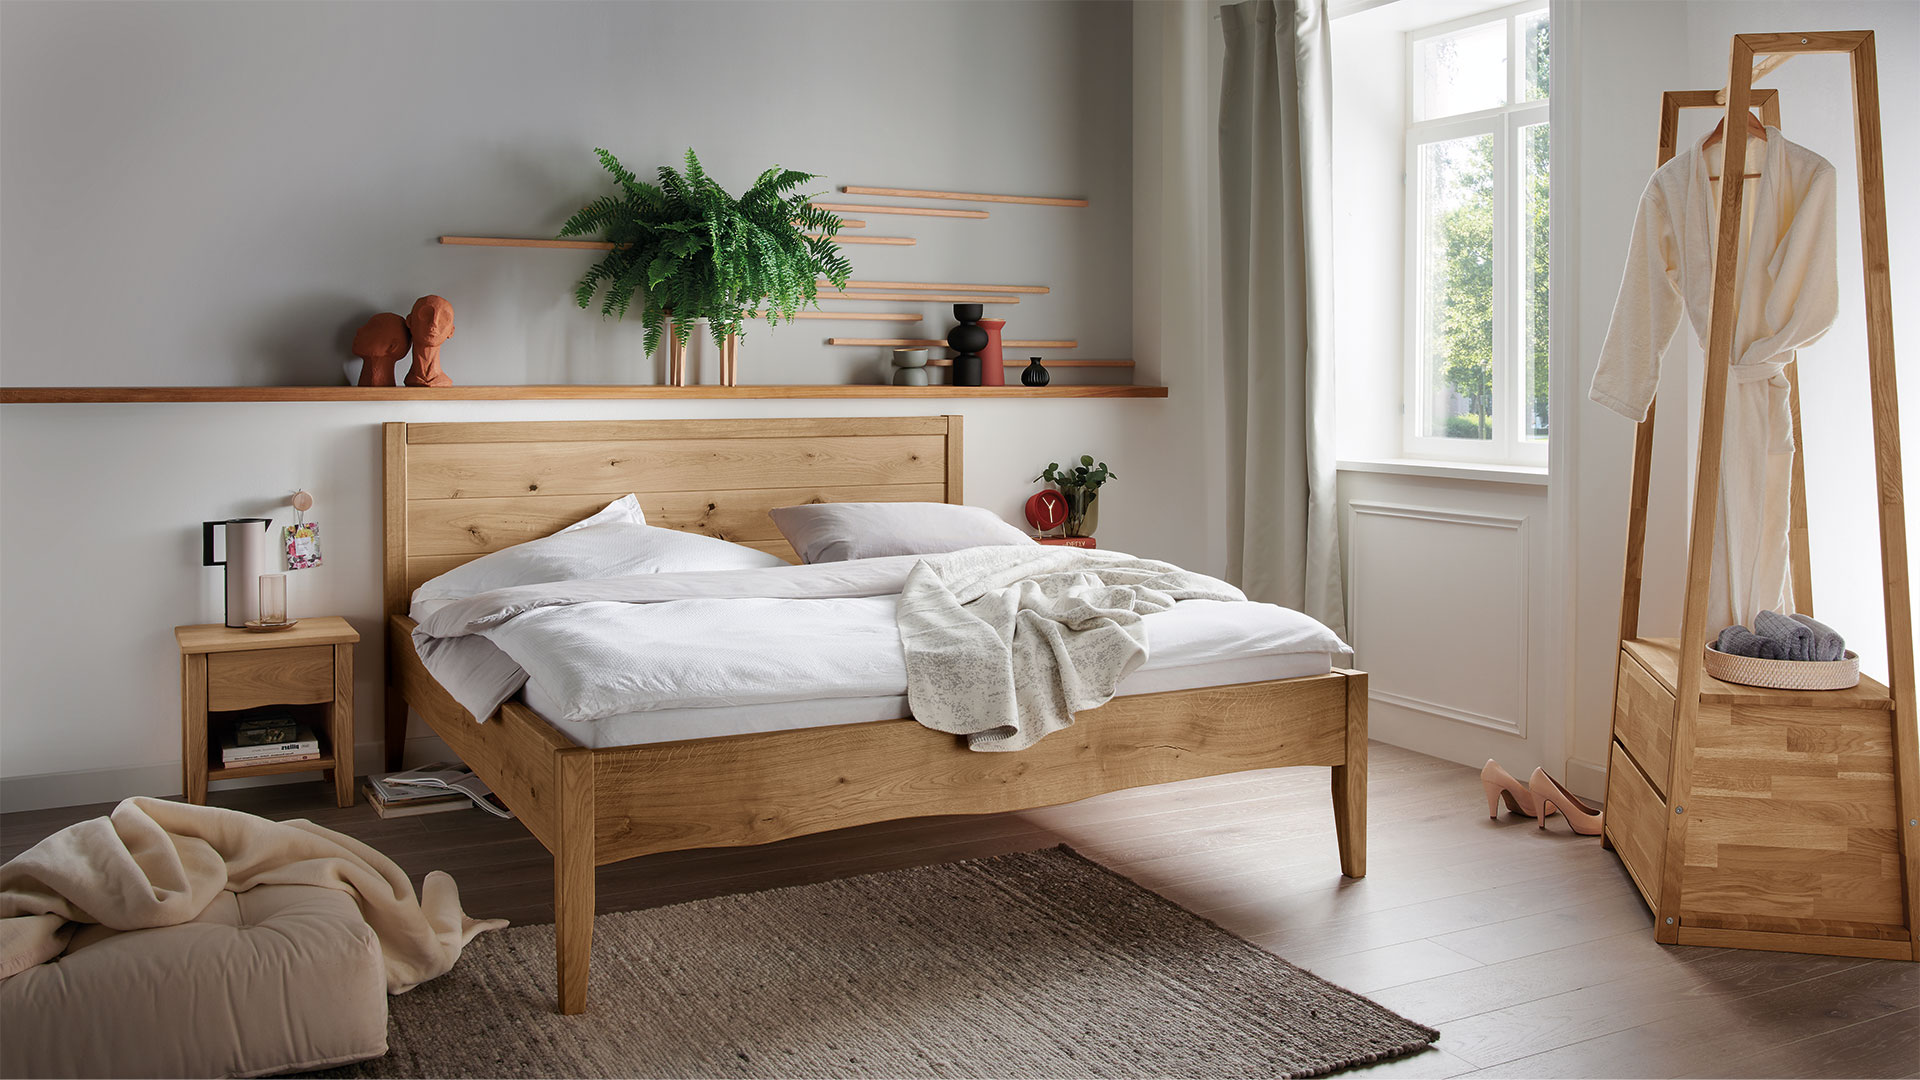 Aanstellen Historicus talent Massief houten bed "Grivola" | allnatura Nederland